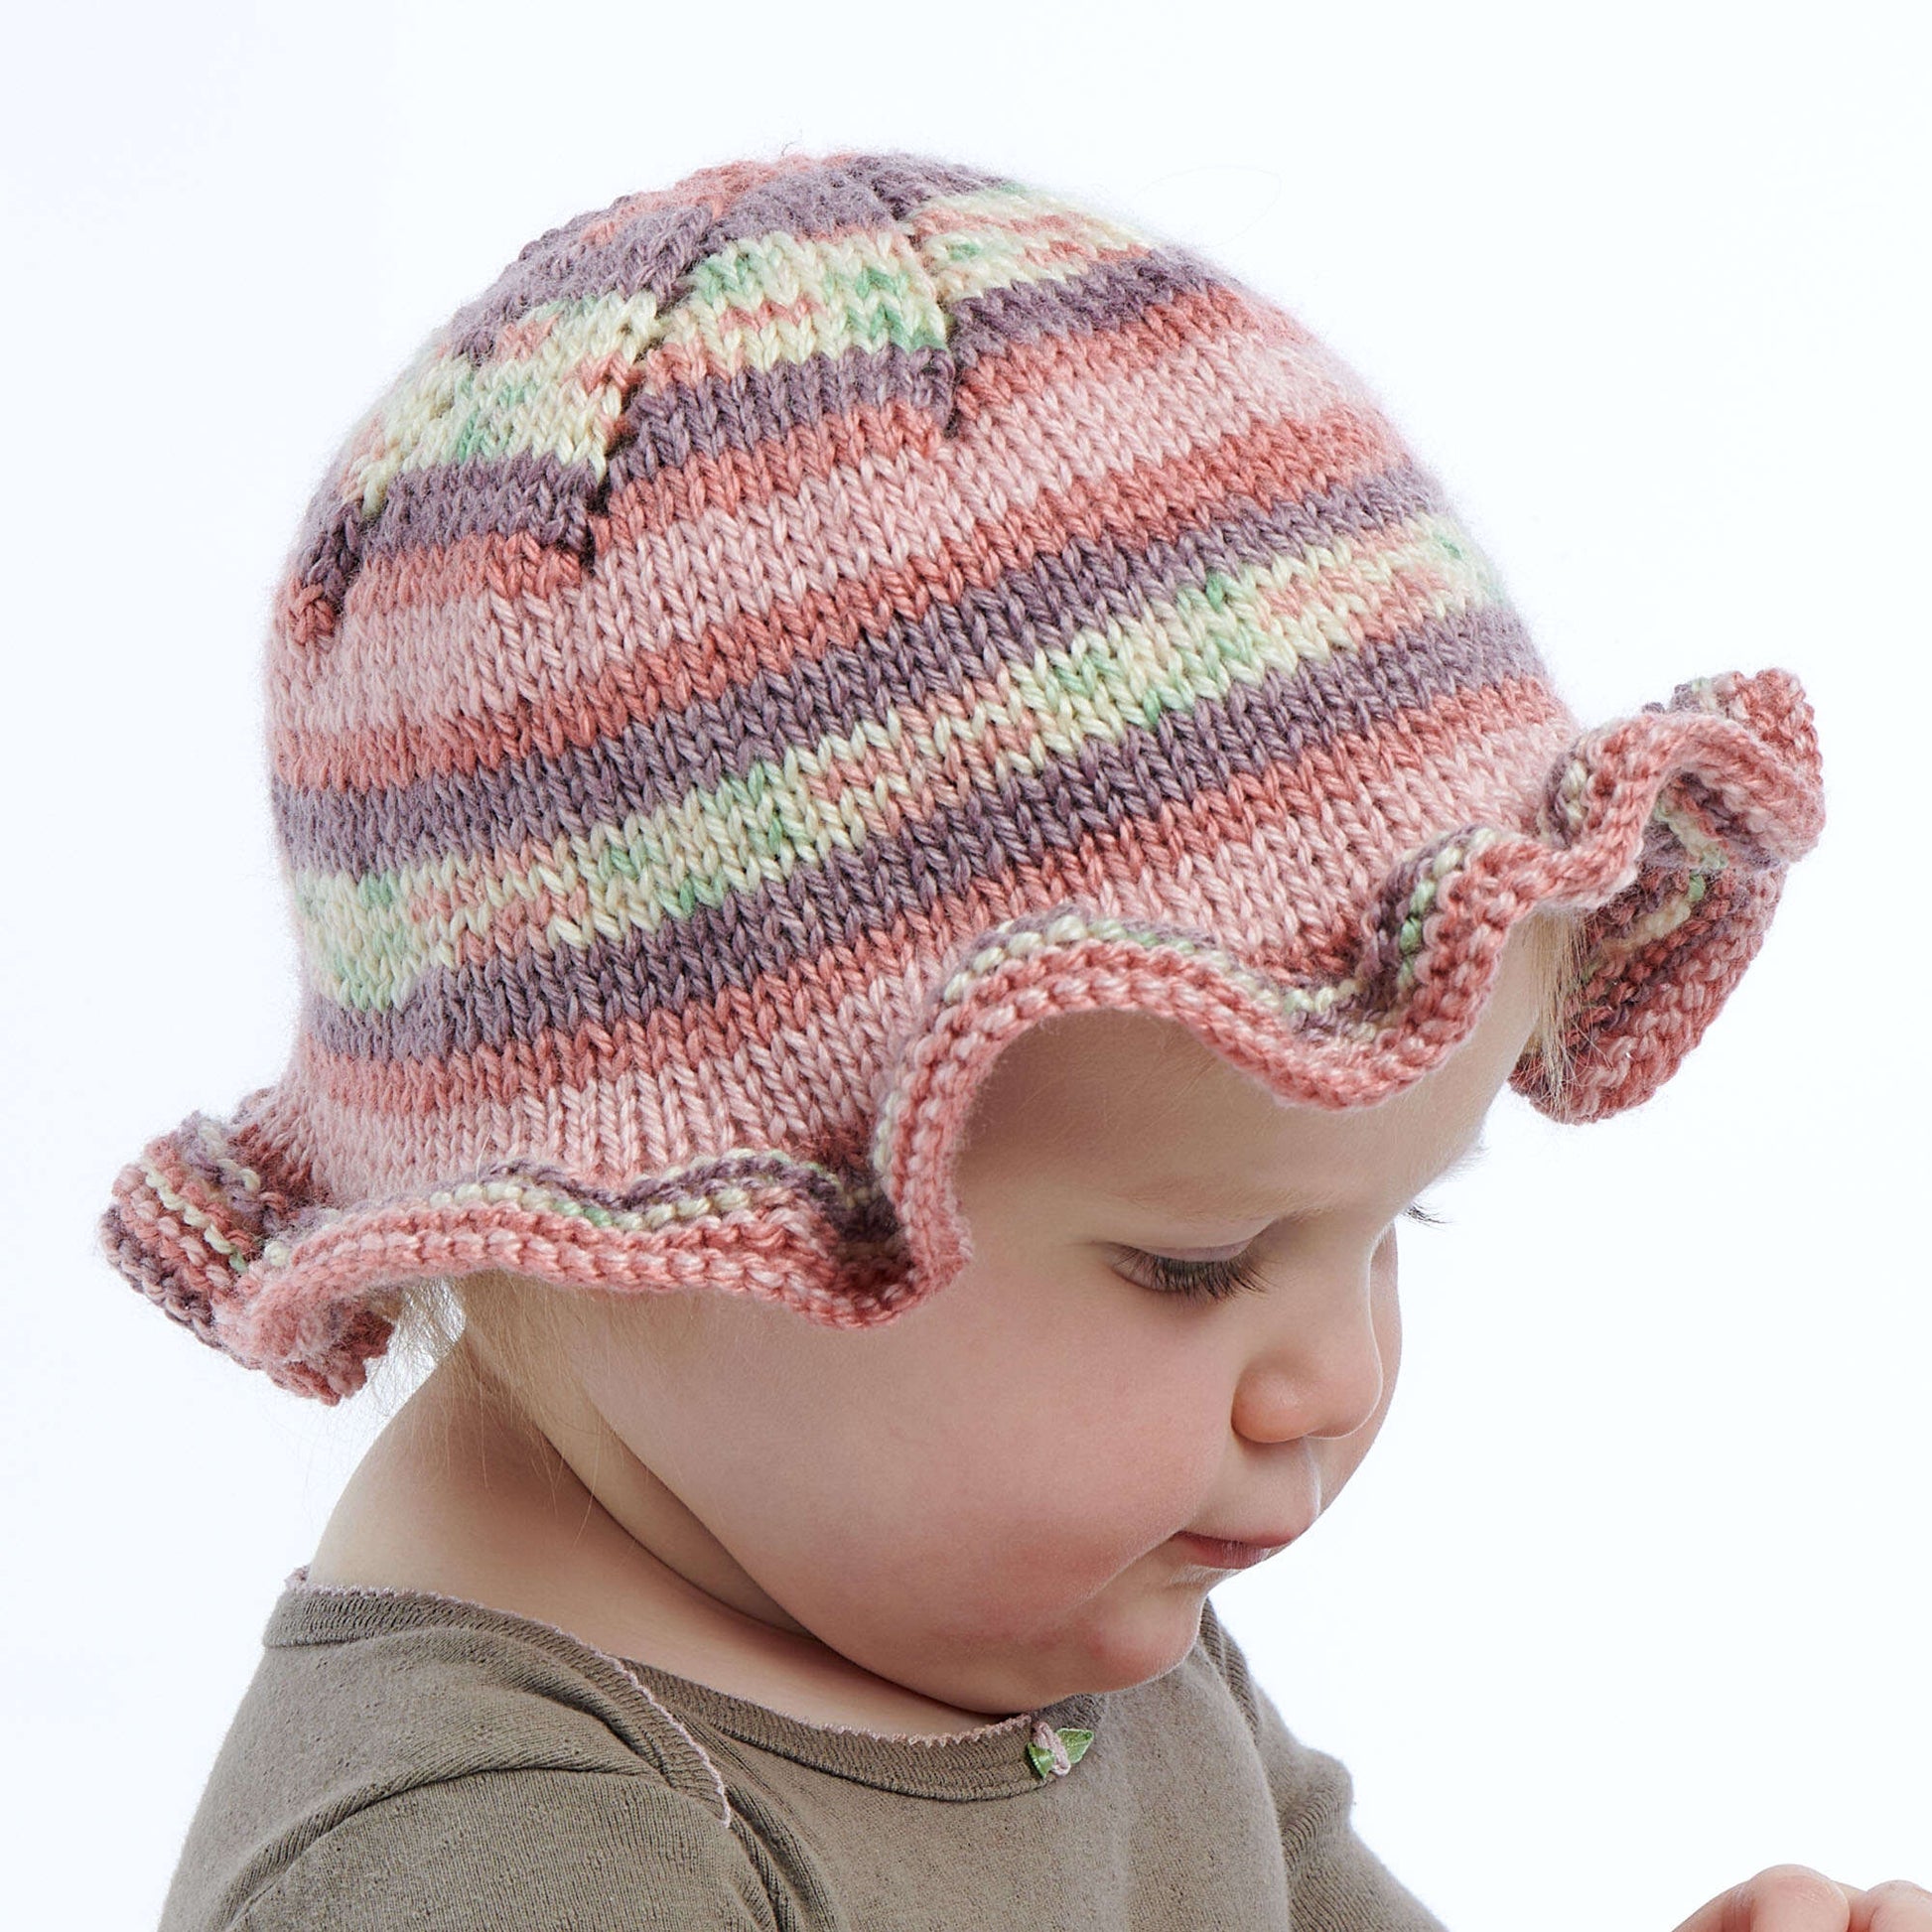 Free Bernat Knit Ruffle Baby Hat Pattern